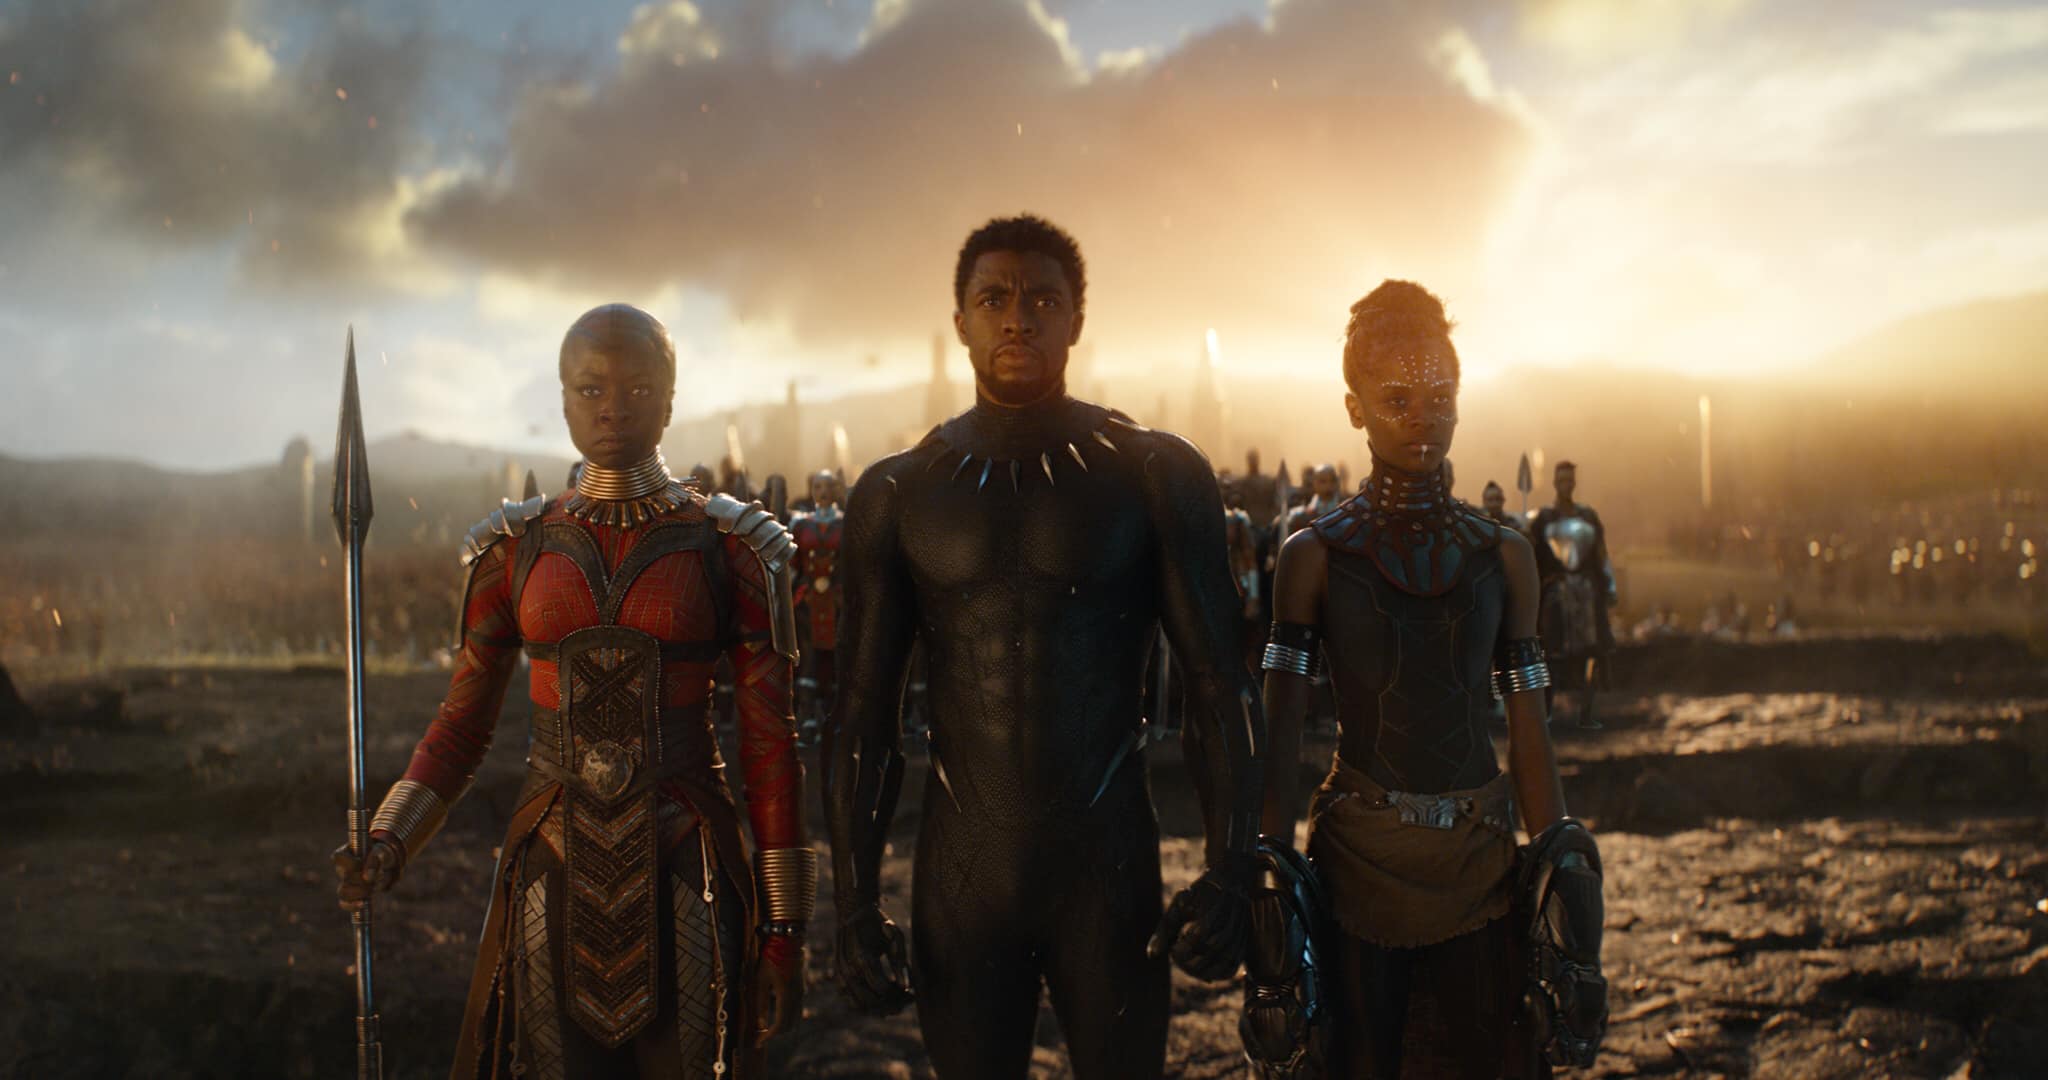 Chadwick Boseman, actorul care l-a jucat pe Black Panther în filmele cu supereroi Marvel, a murit